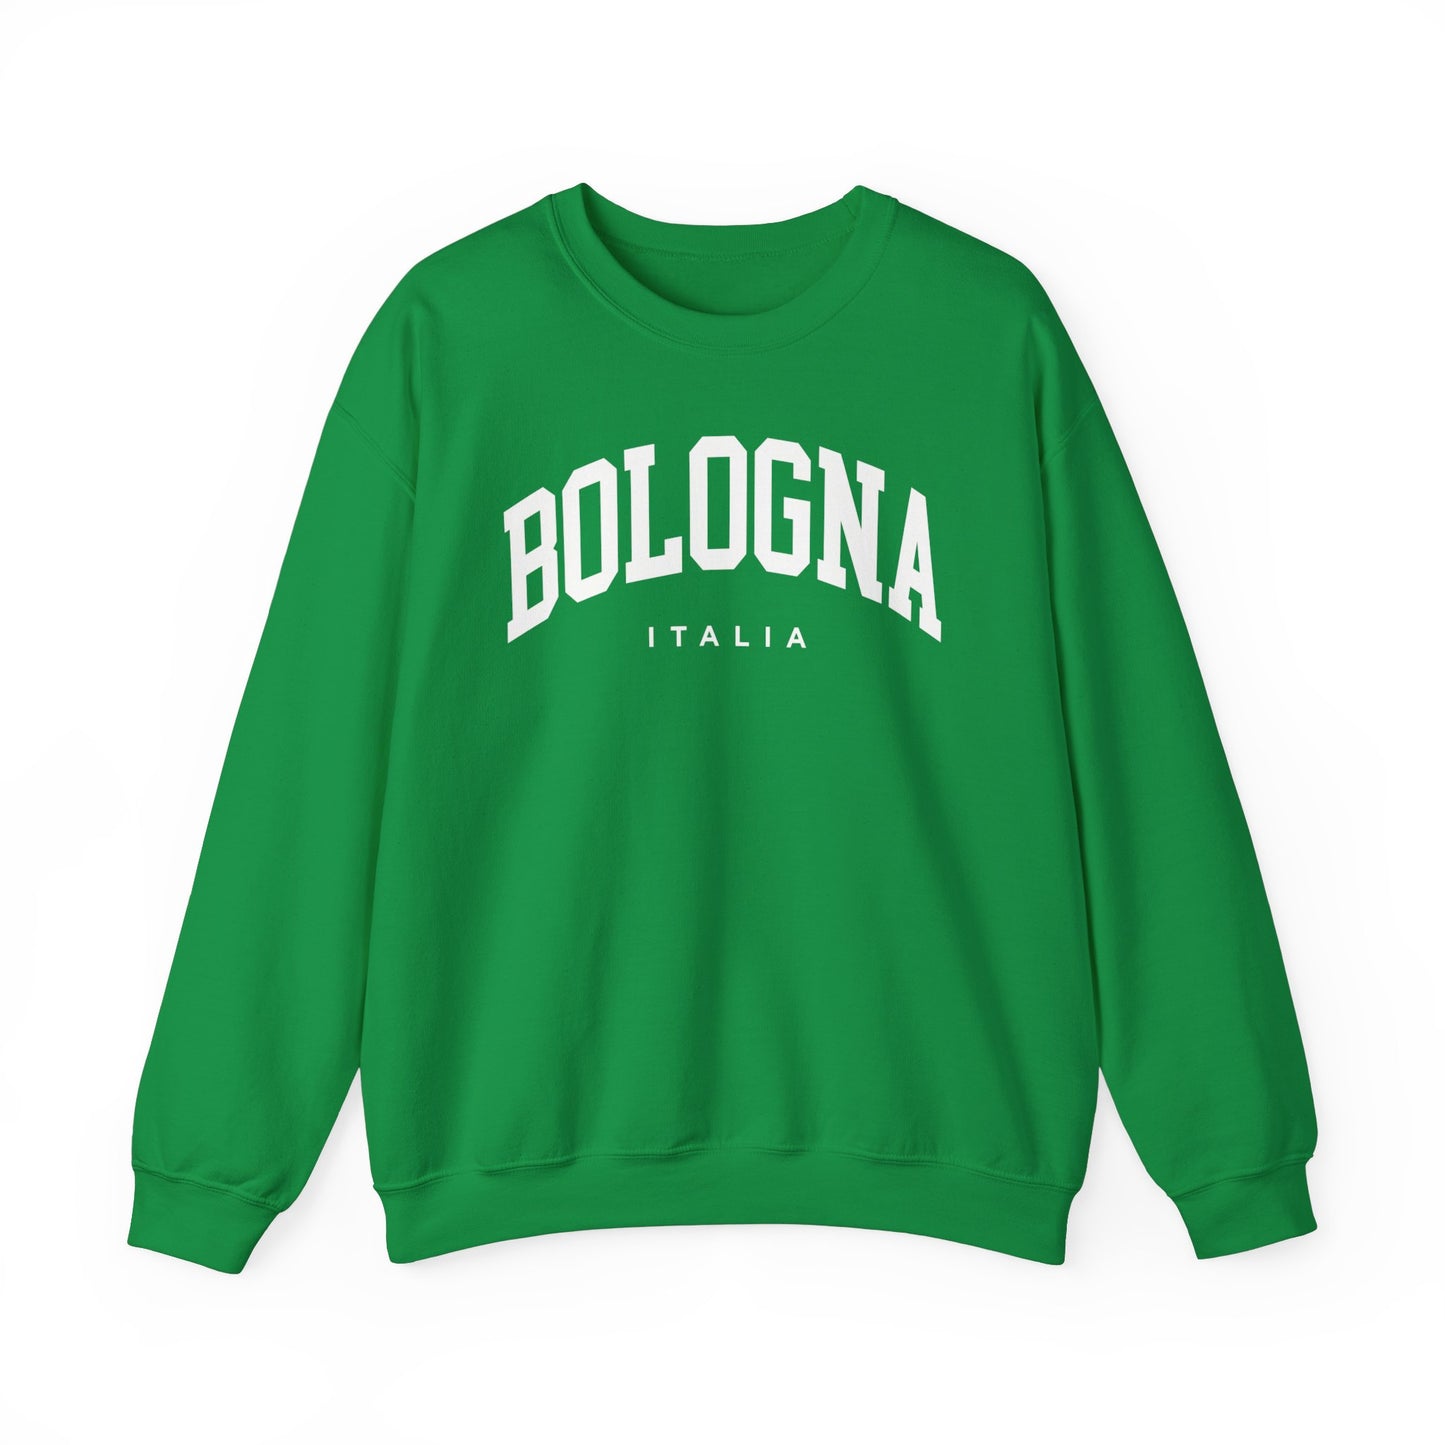 Bologna Italy Sweatshirt